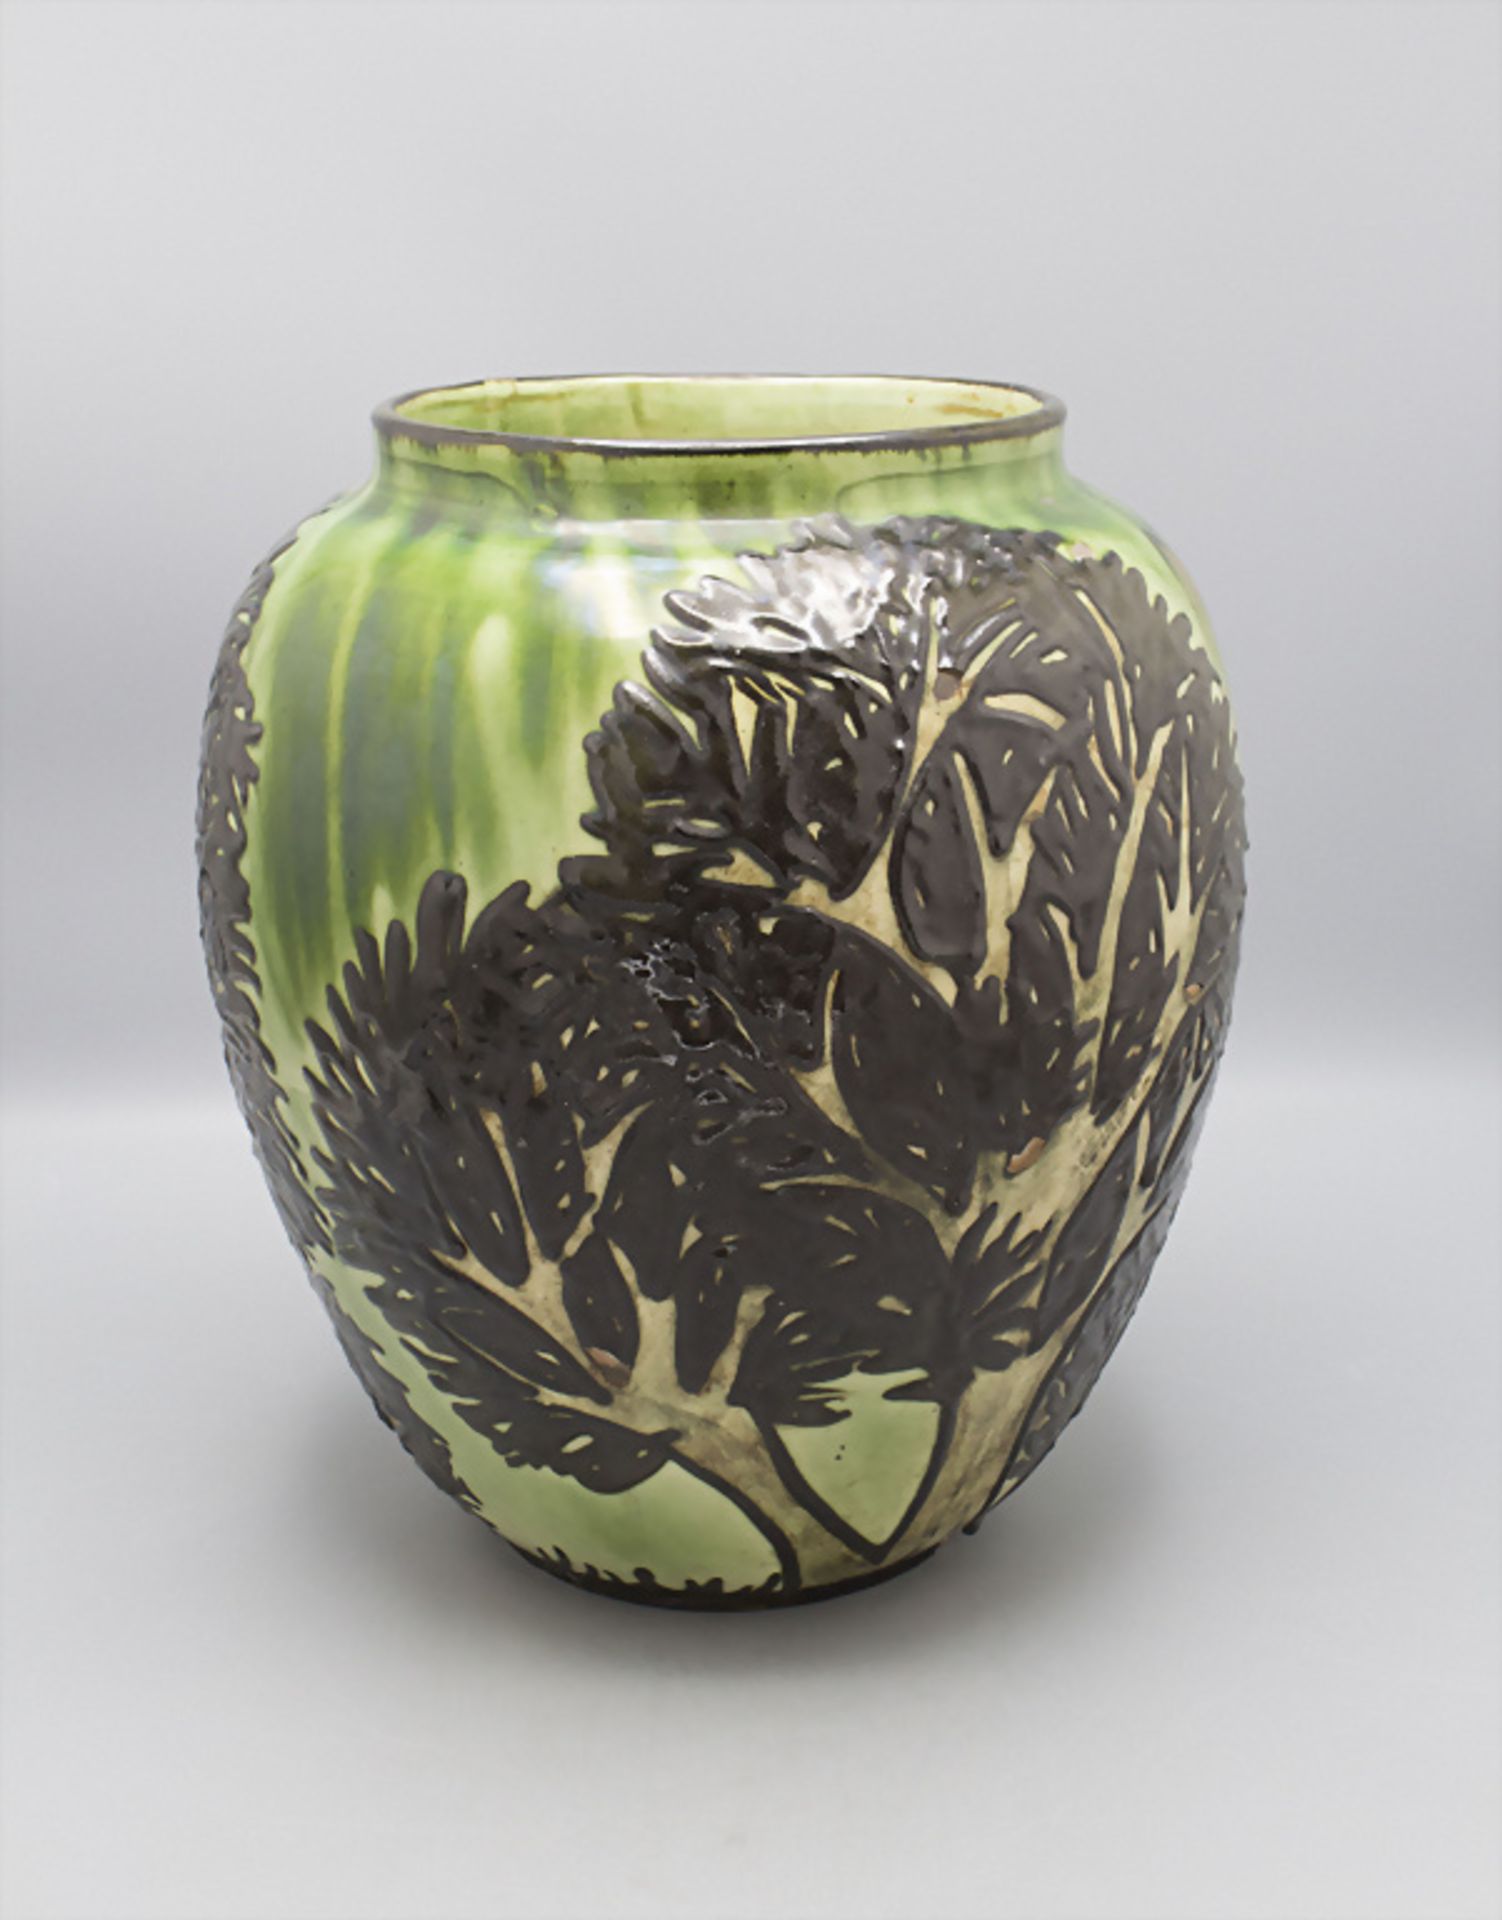 Jugendstil Majolika Vase 'Bäume' / An Art Nouveau majolica vase 'Trees', Max Laeuger, ... - Image 3 of 6